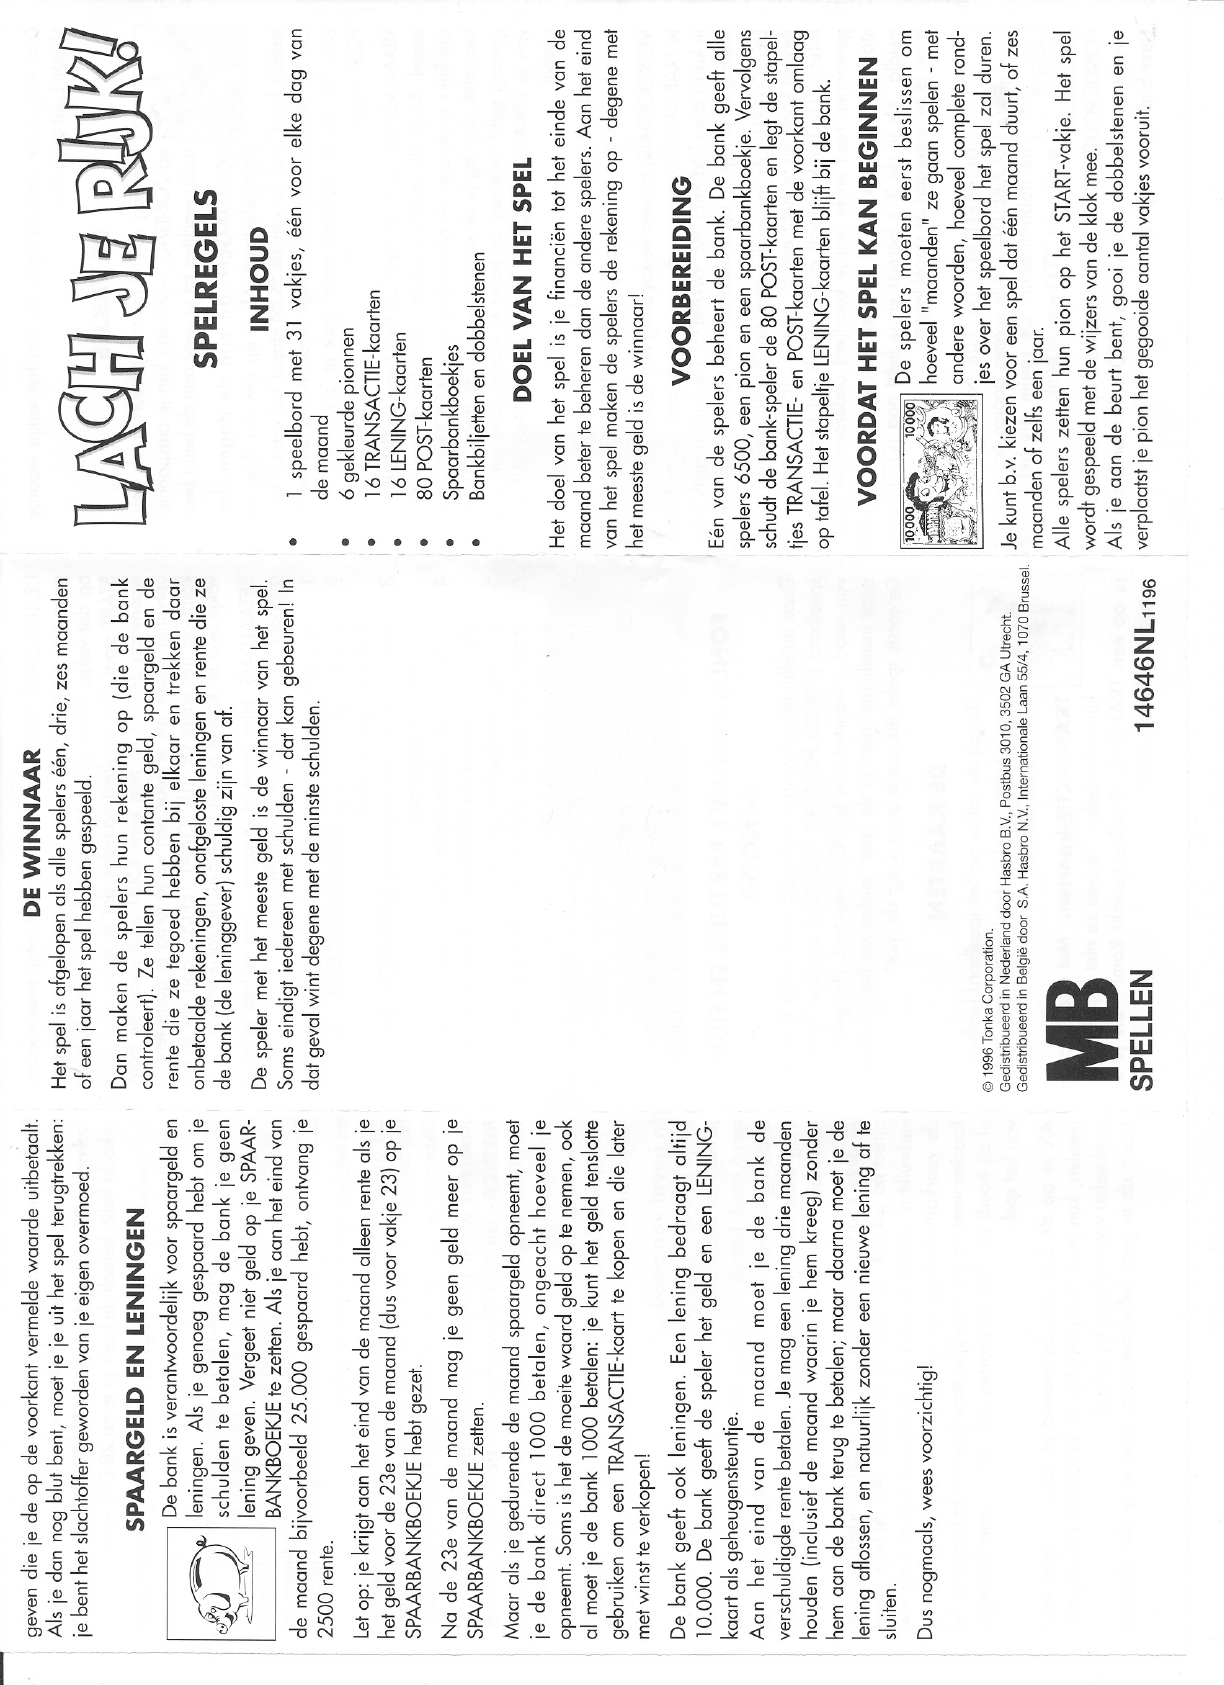 Robijn ophouden pit Handleiding MB Lach je rijk (pagina 1 van 2) (Nederlands)